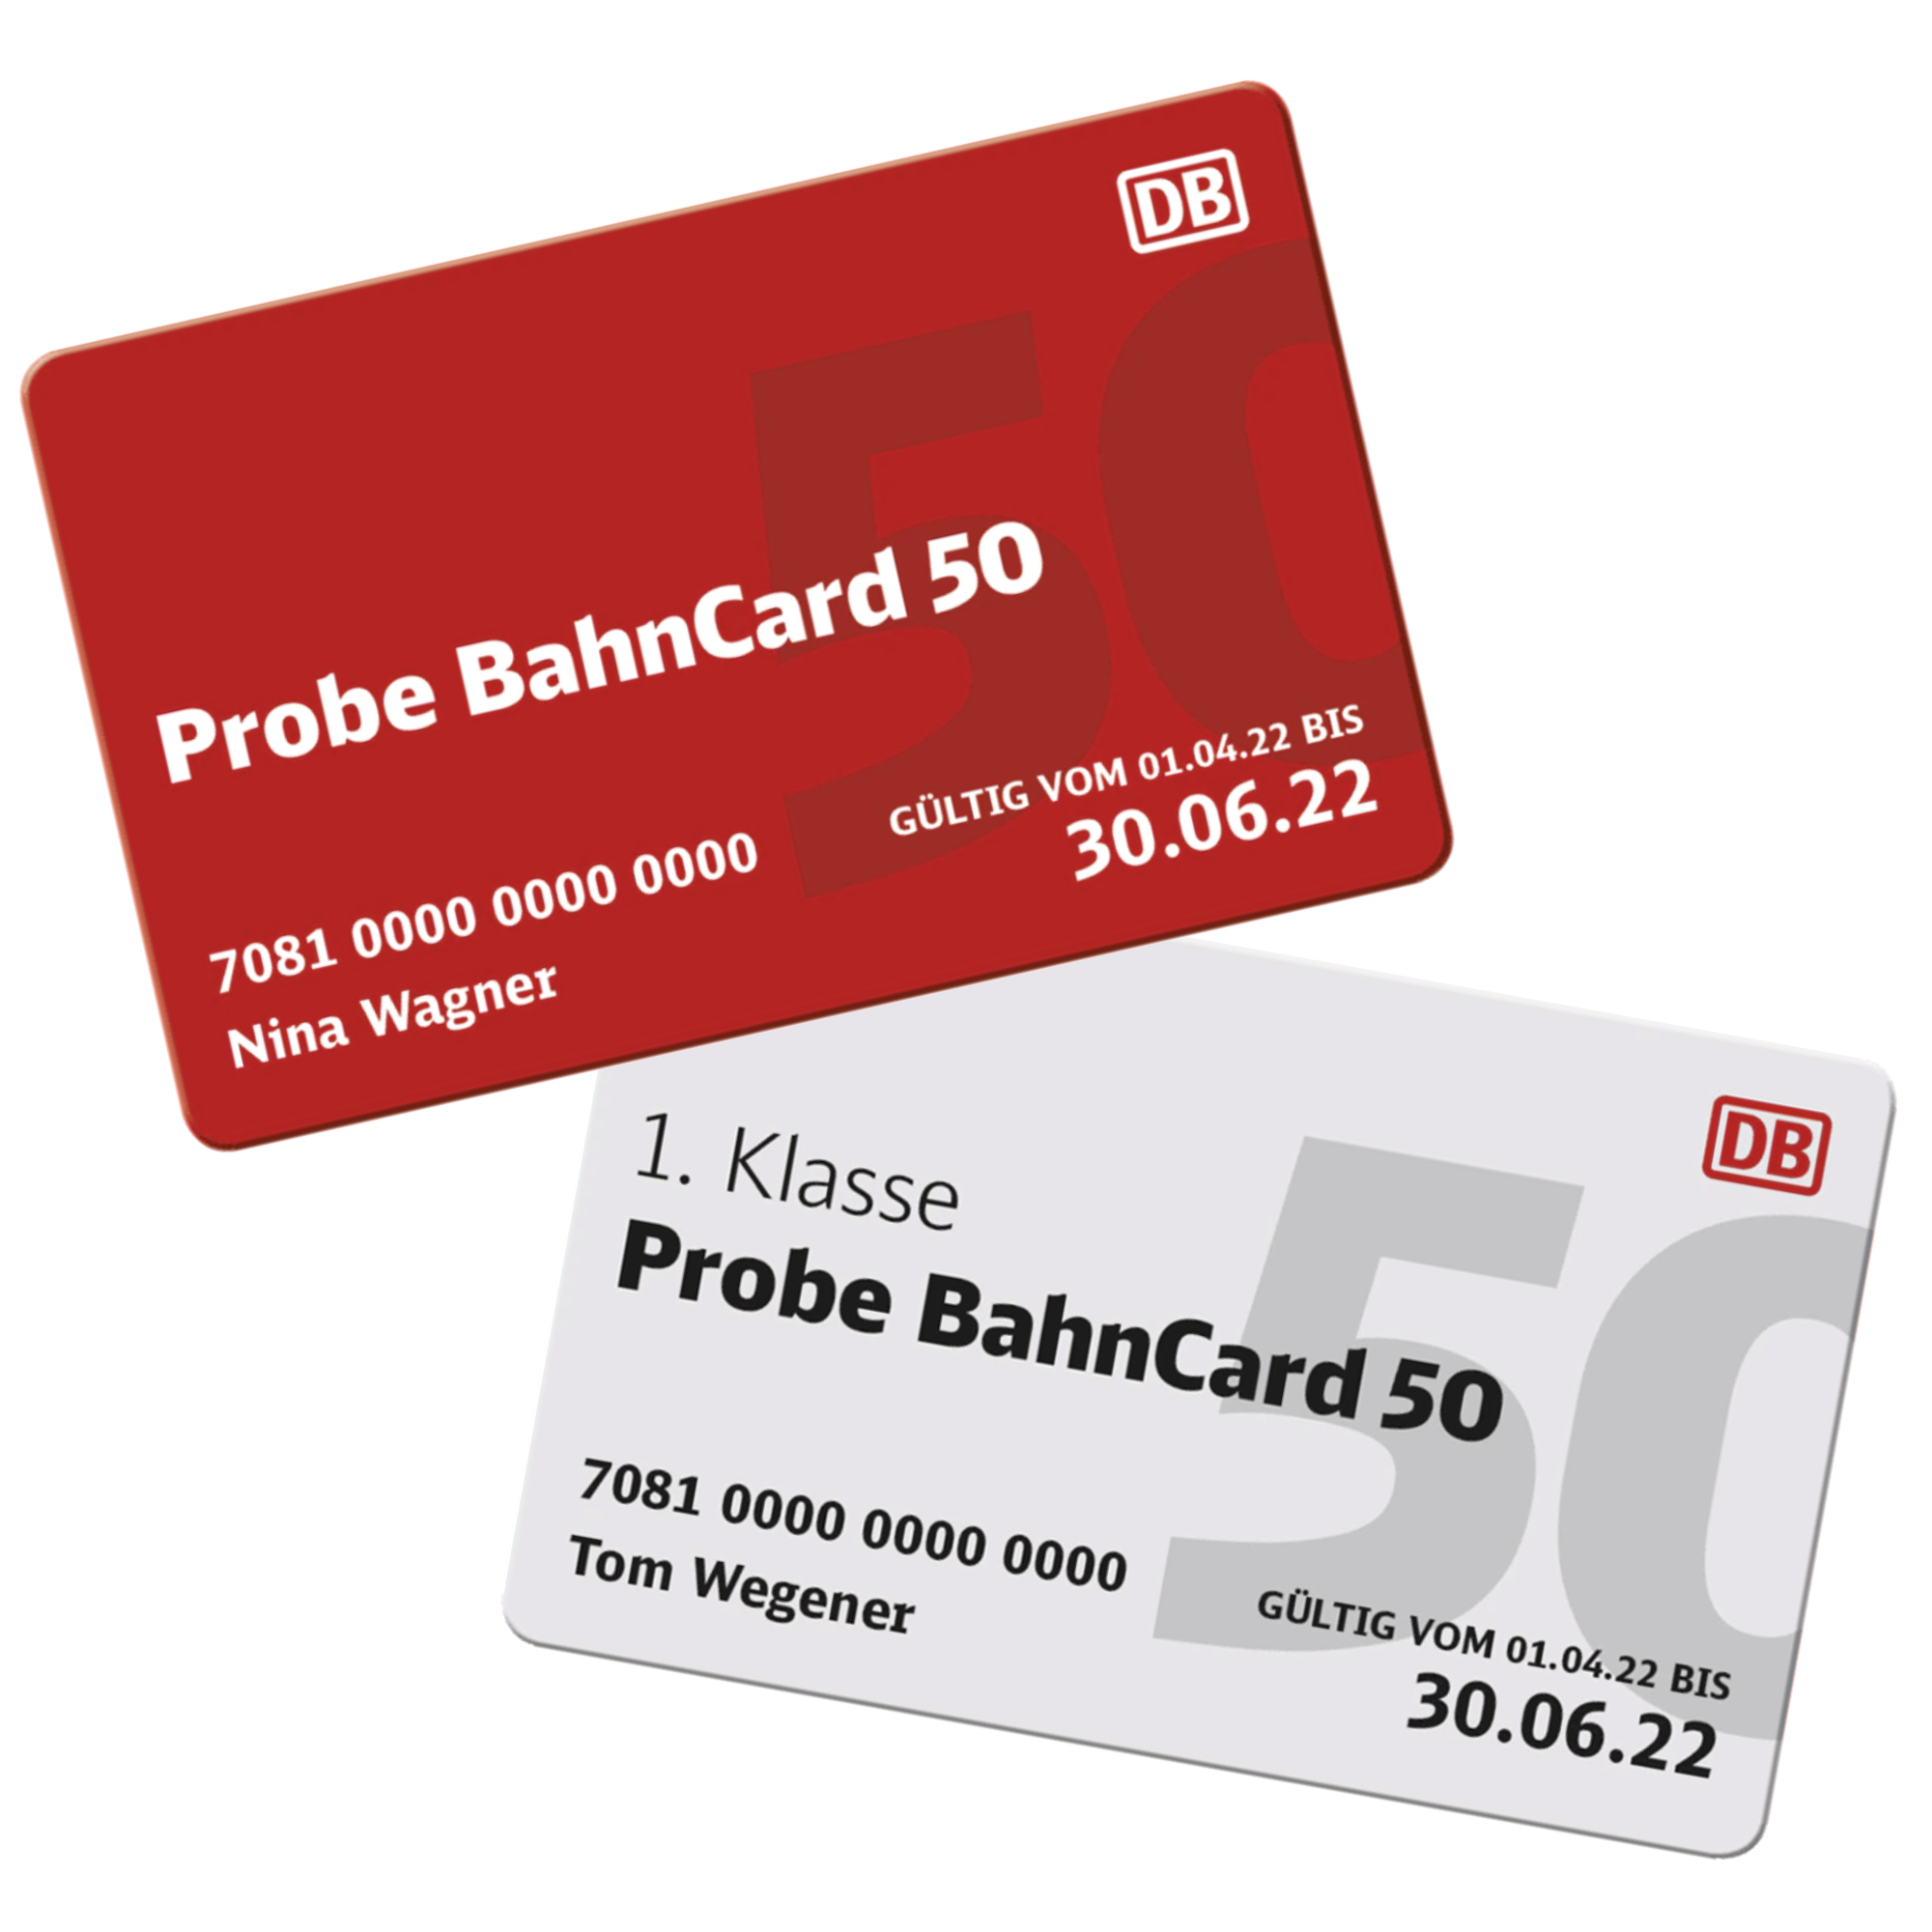 Probe BahnCard 50